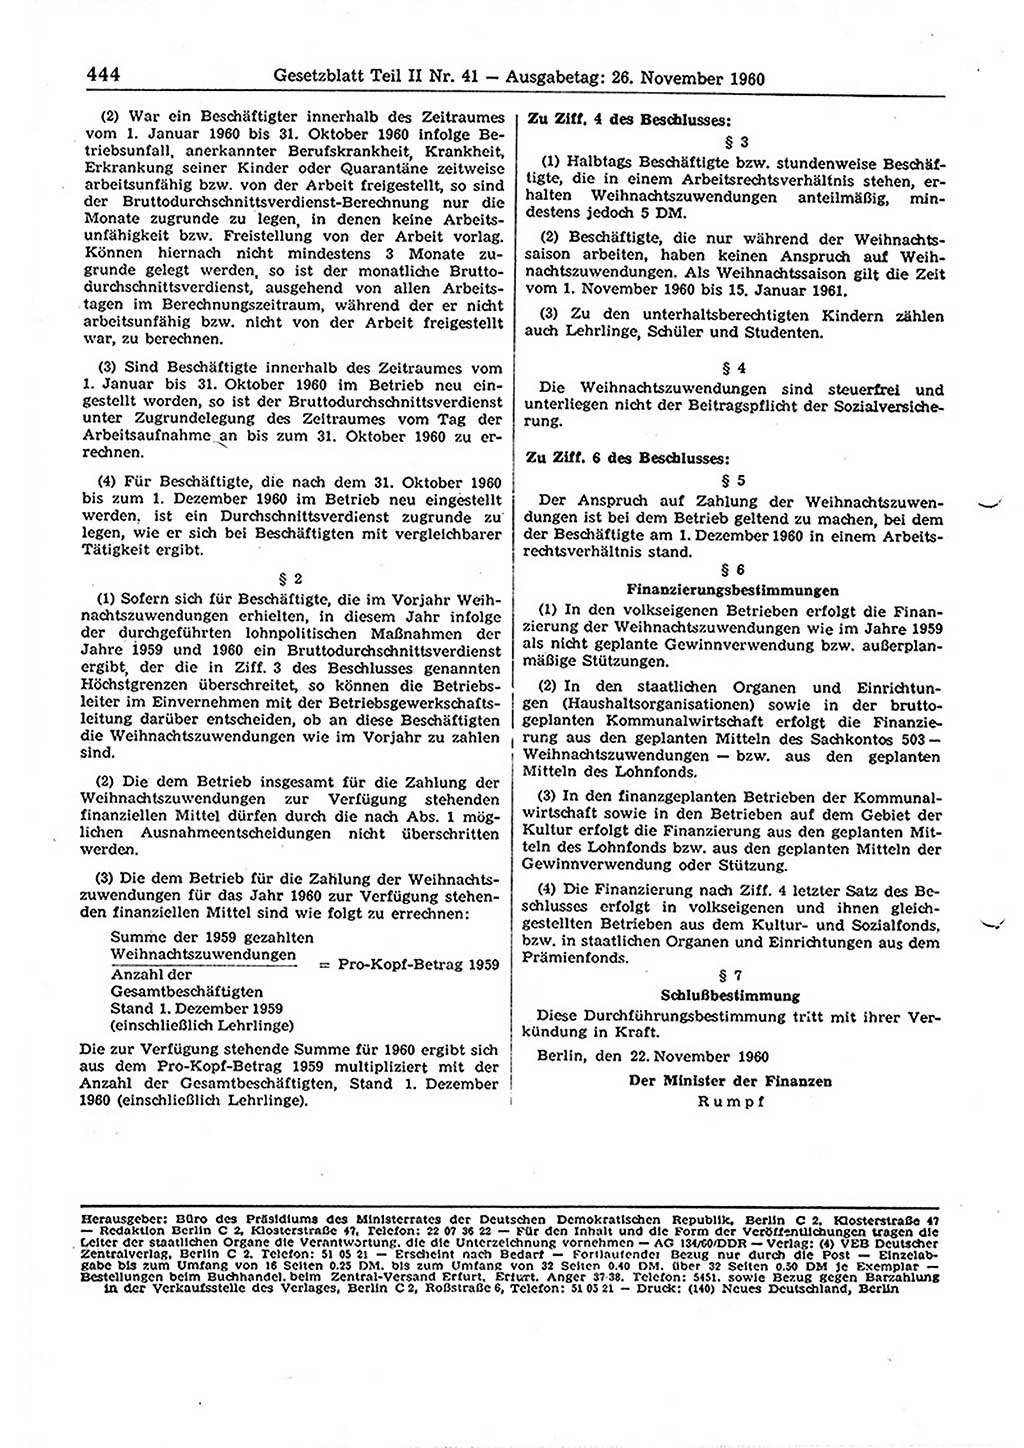 Gesetzblatt (GBl.) der Deutschen Demokratischen Republik (DDR) Teil ⅠⅠ 1960, Seite 444 (GBl. DDR ⅠⅠ 1960, S. 444)